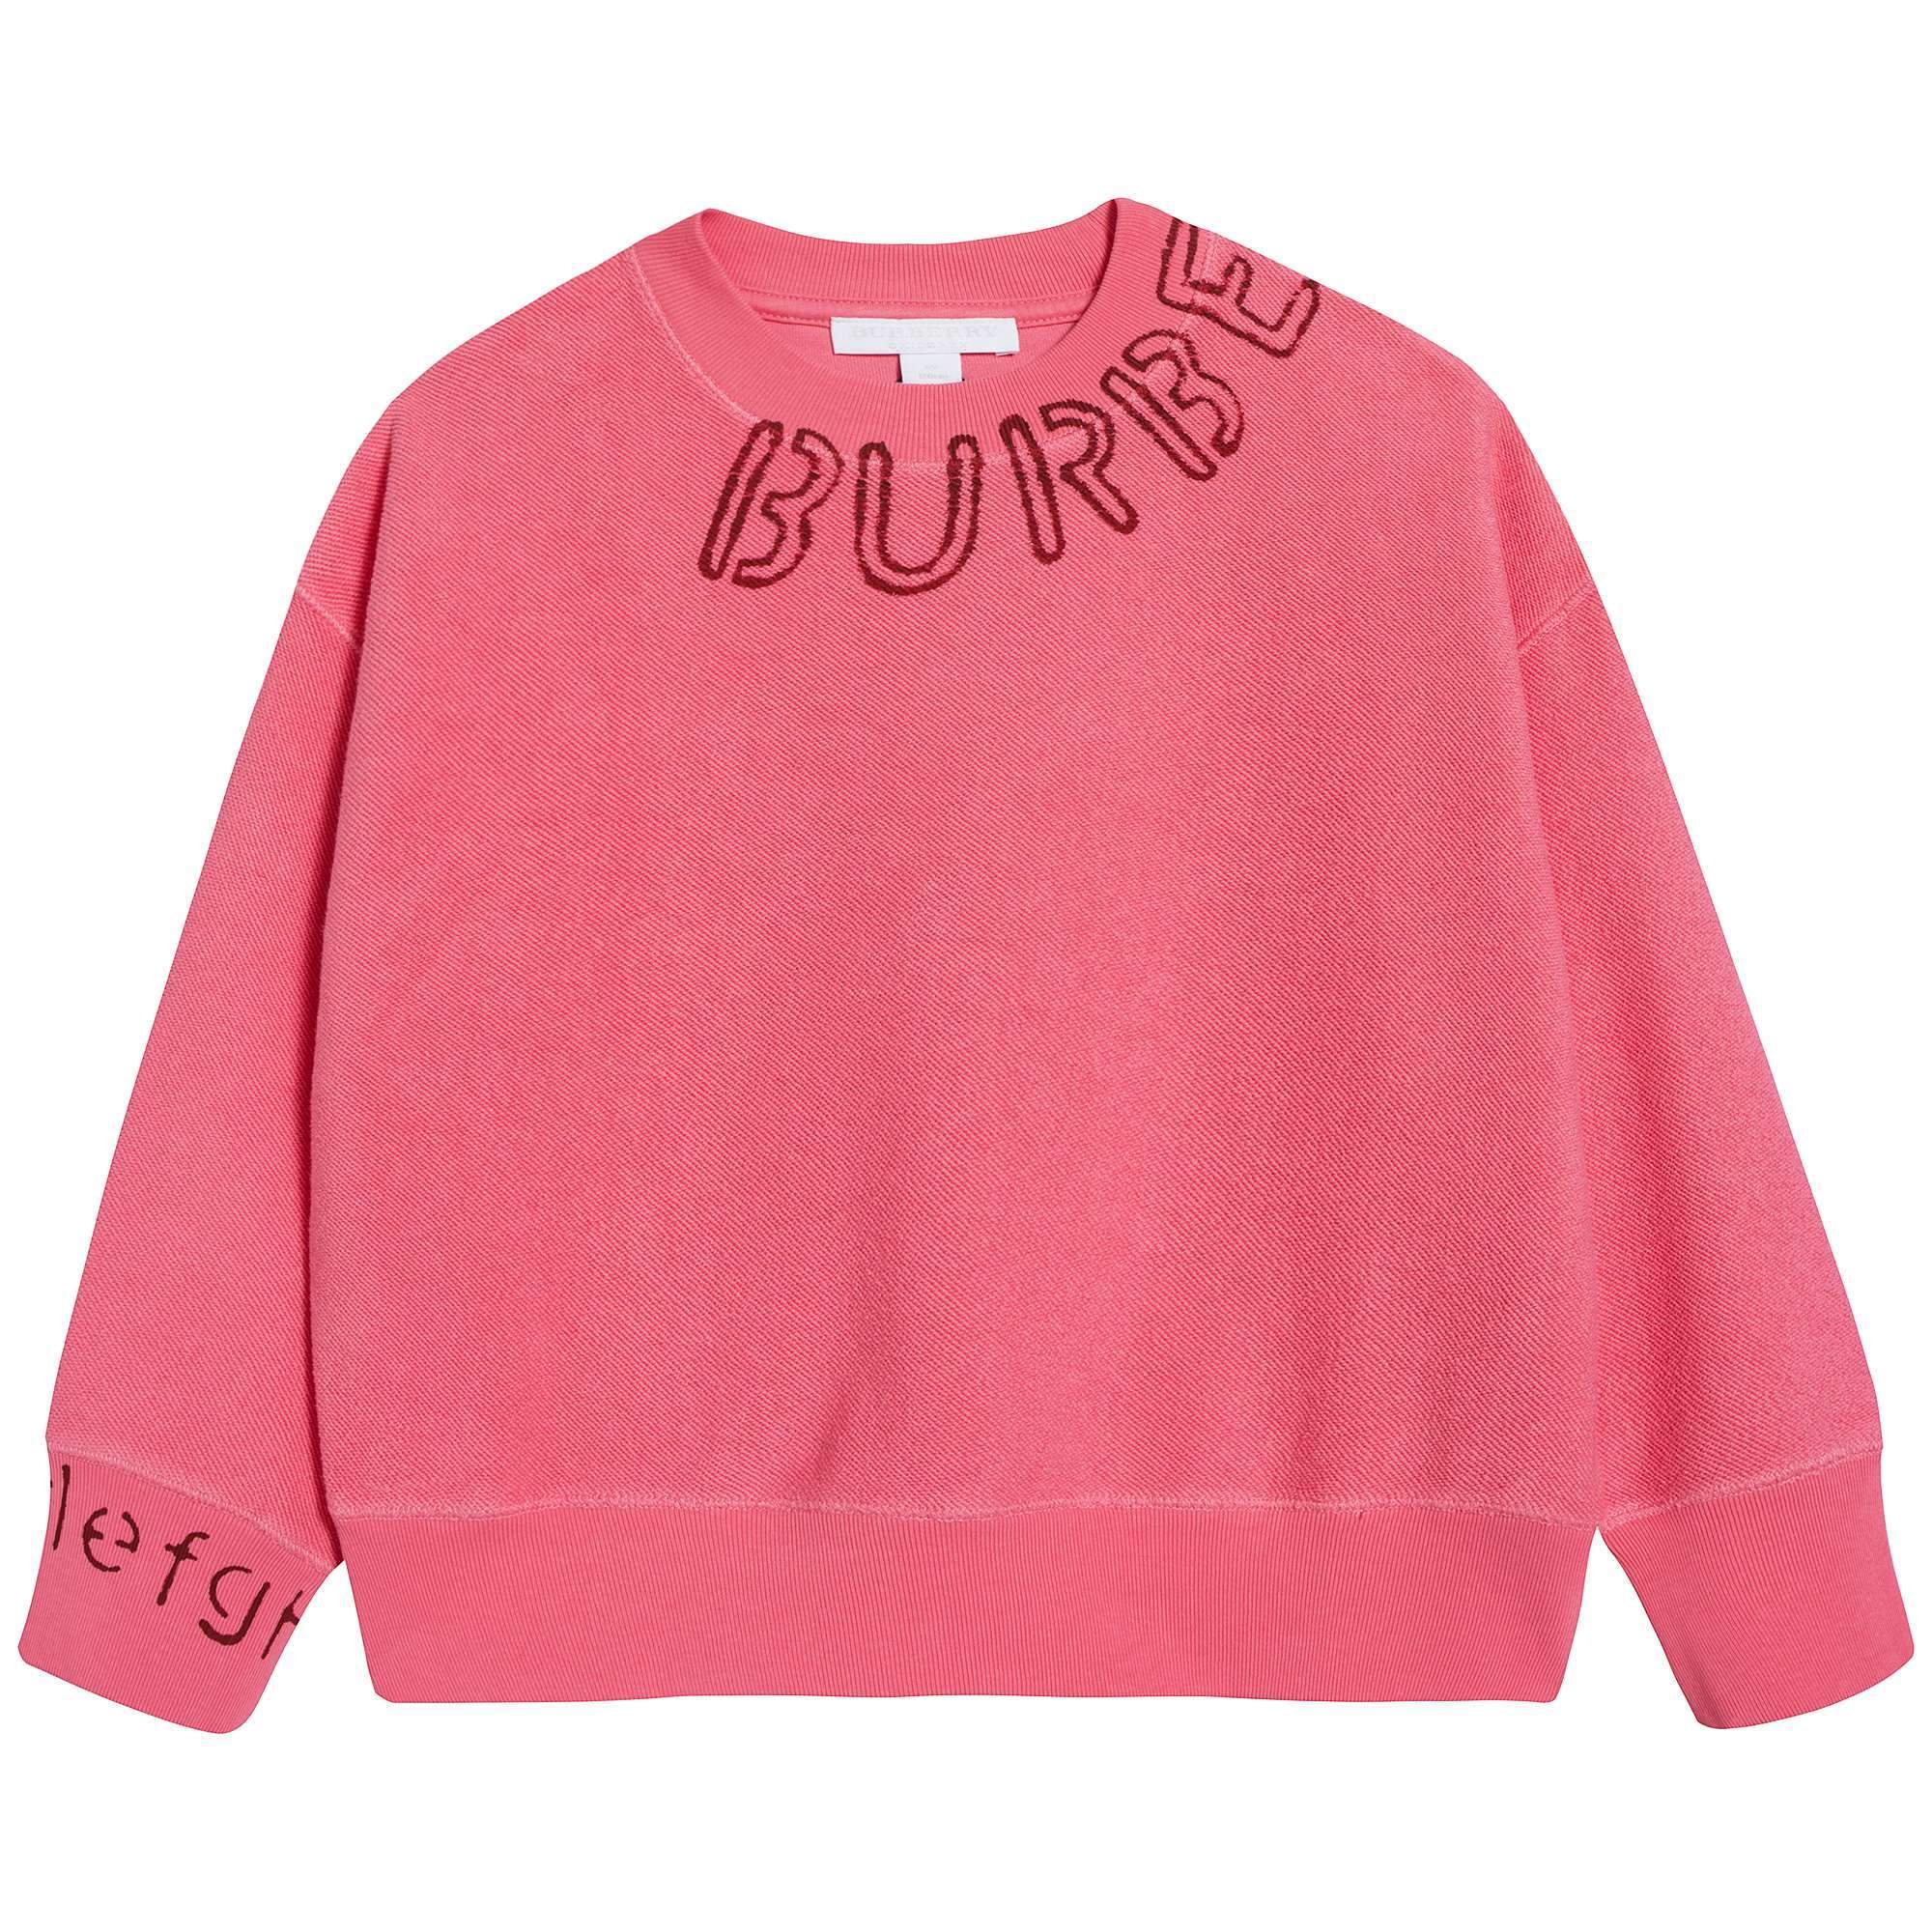 Girls Bright Pink Cotton Sweatshirt